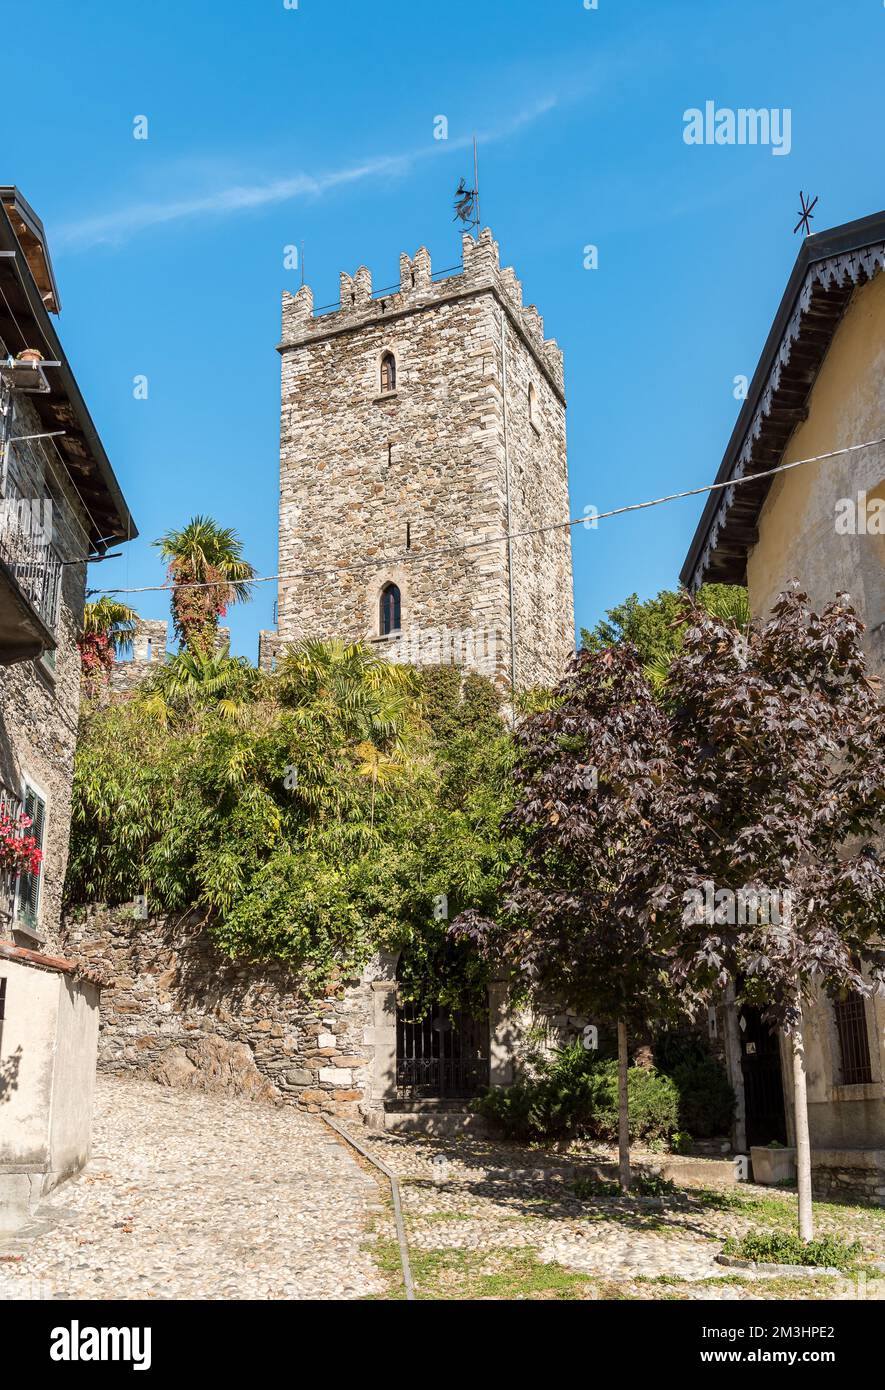 Das mittelalterliche Schloss Rezzonico befindet sich in Rezzonico, einem Dorf San Siro am Comer See, Lombardei, Italien Stockfoto